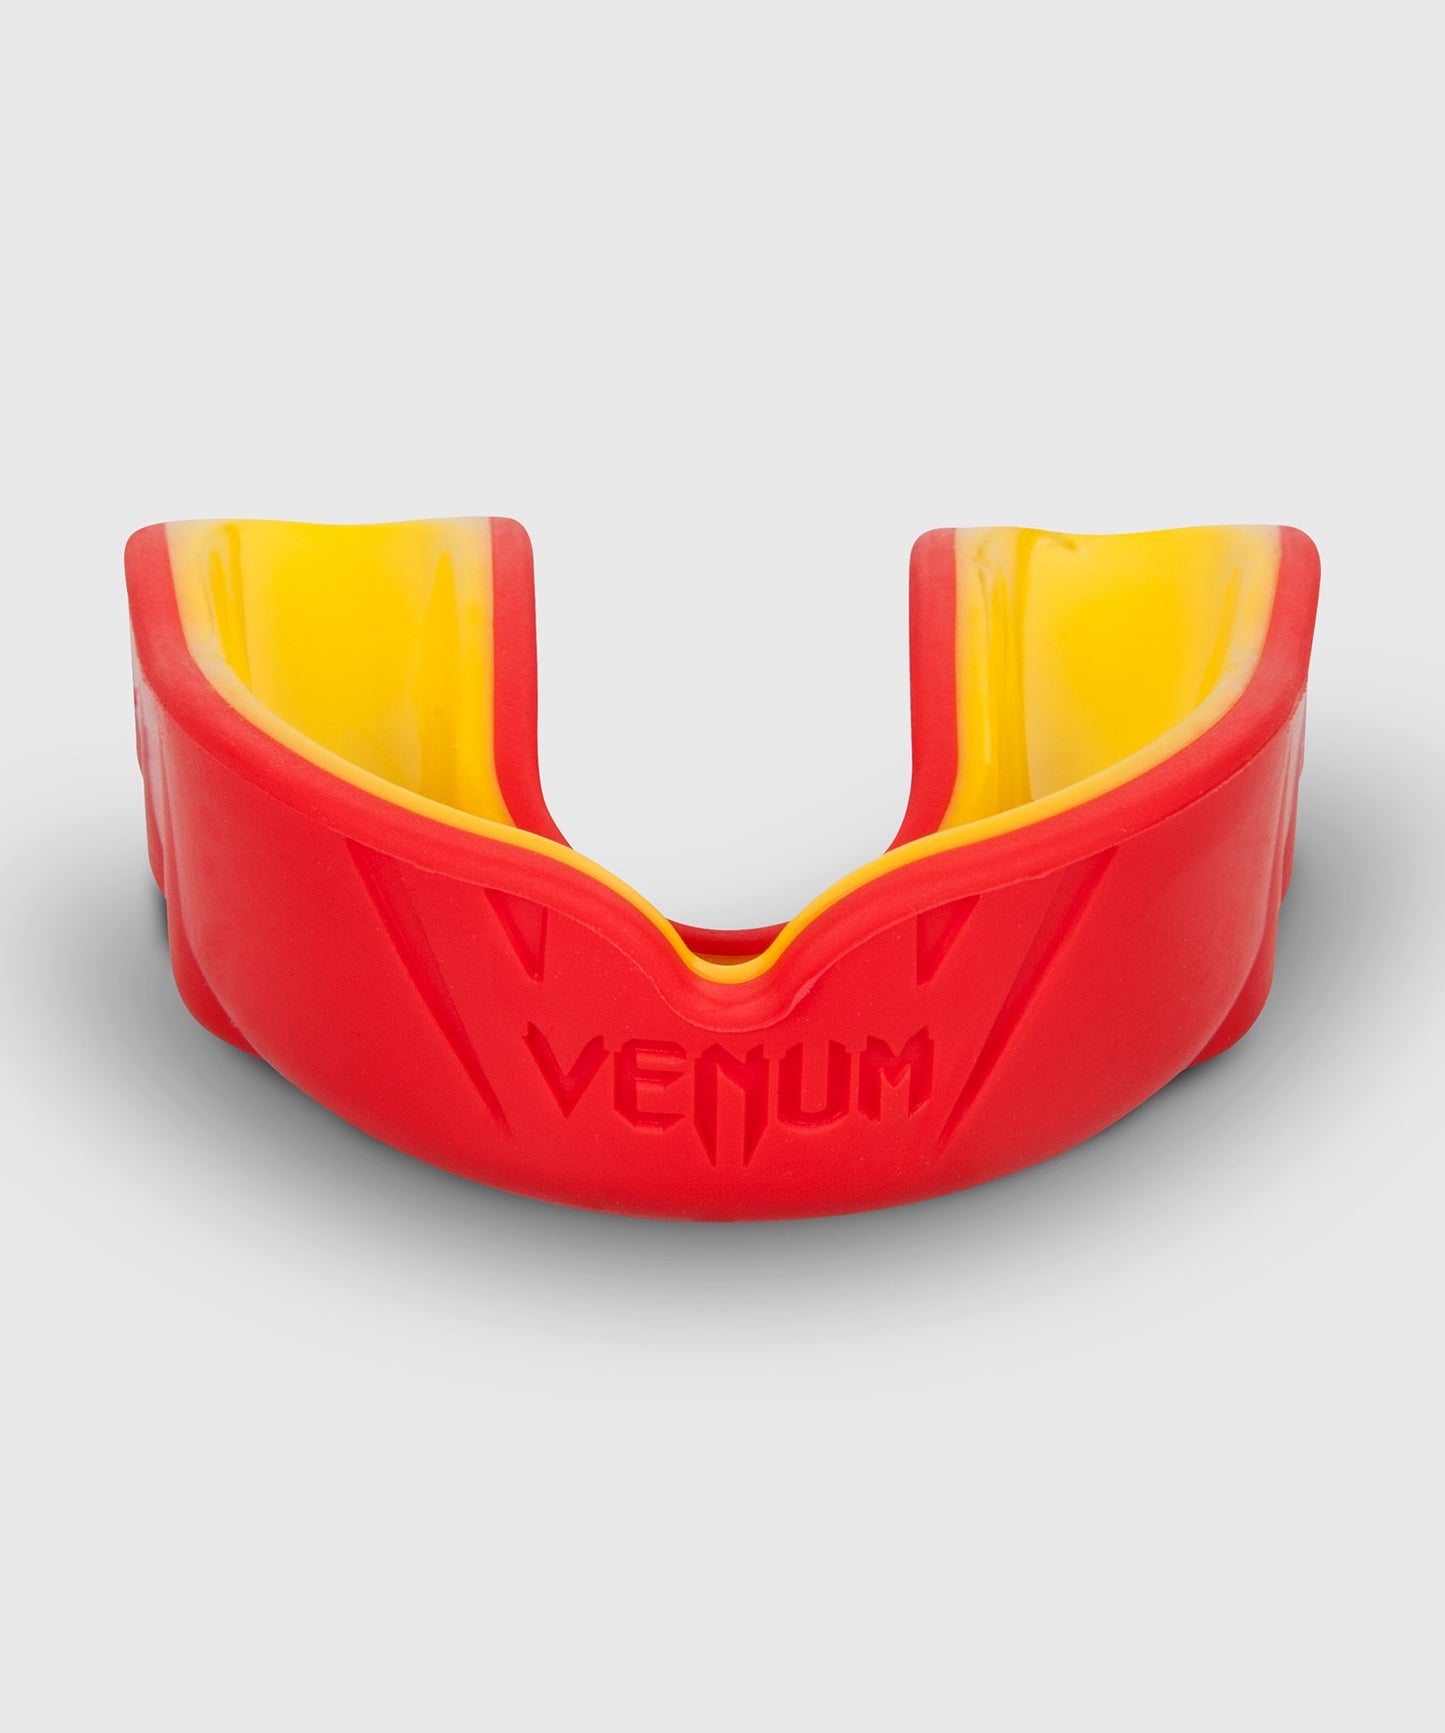 Bandes de Boxe Venum Kontact - 4.50 m - Rouge – Venum France